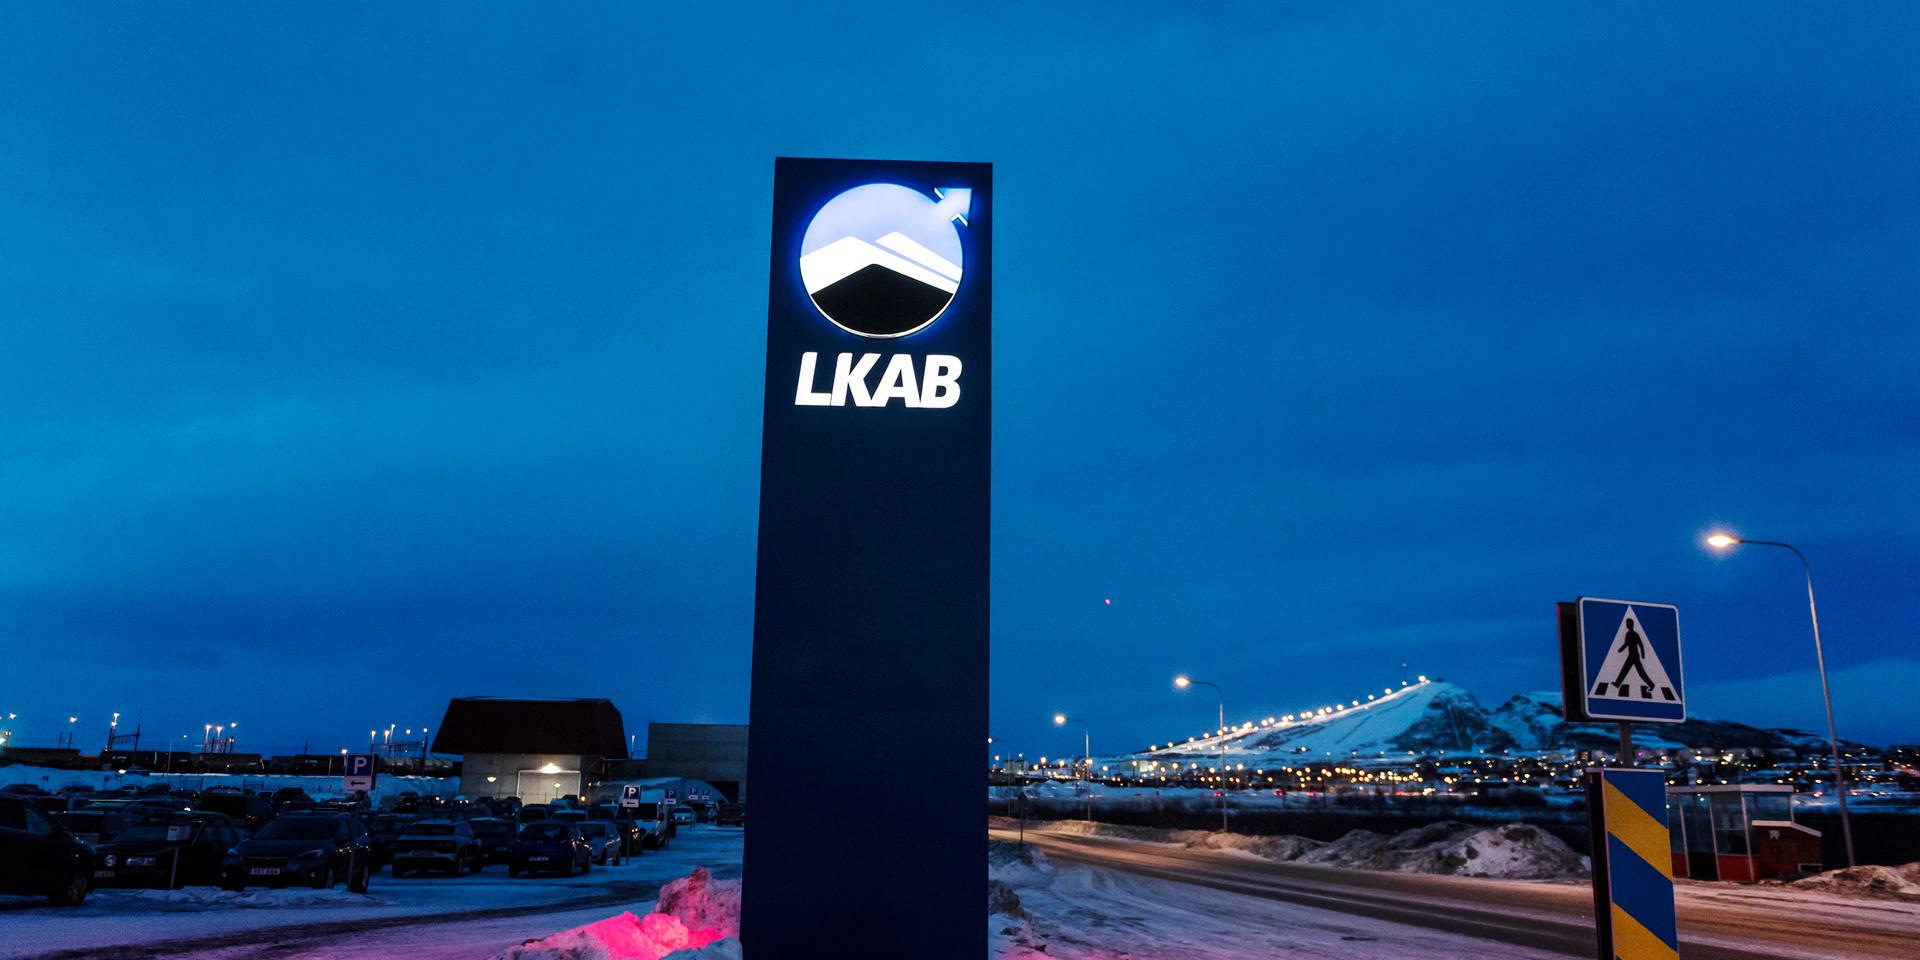 Nekas tillstånd. Gruvbolaget LKAB ville expandera gruvan i Kiruna, men tillståndsprocessen måste nu börja om efter ett formaliafel.